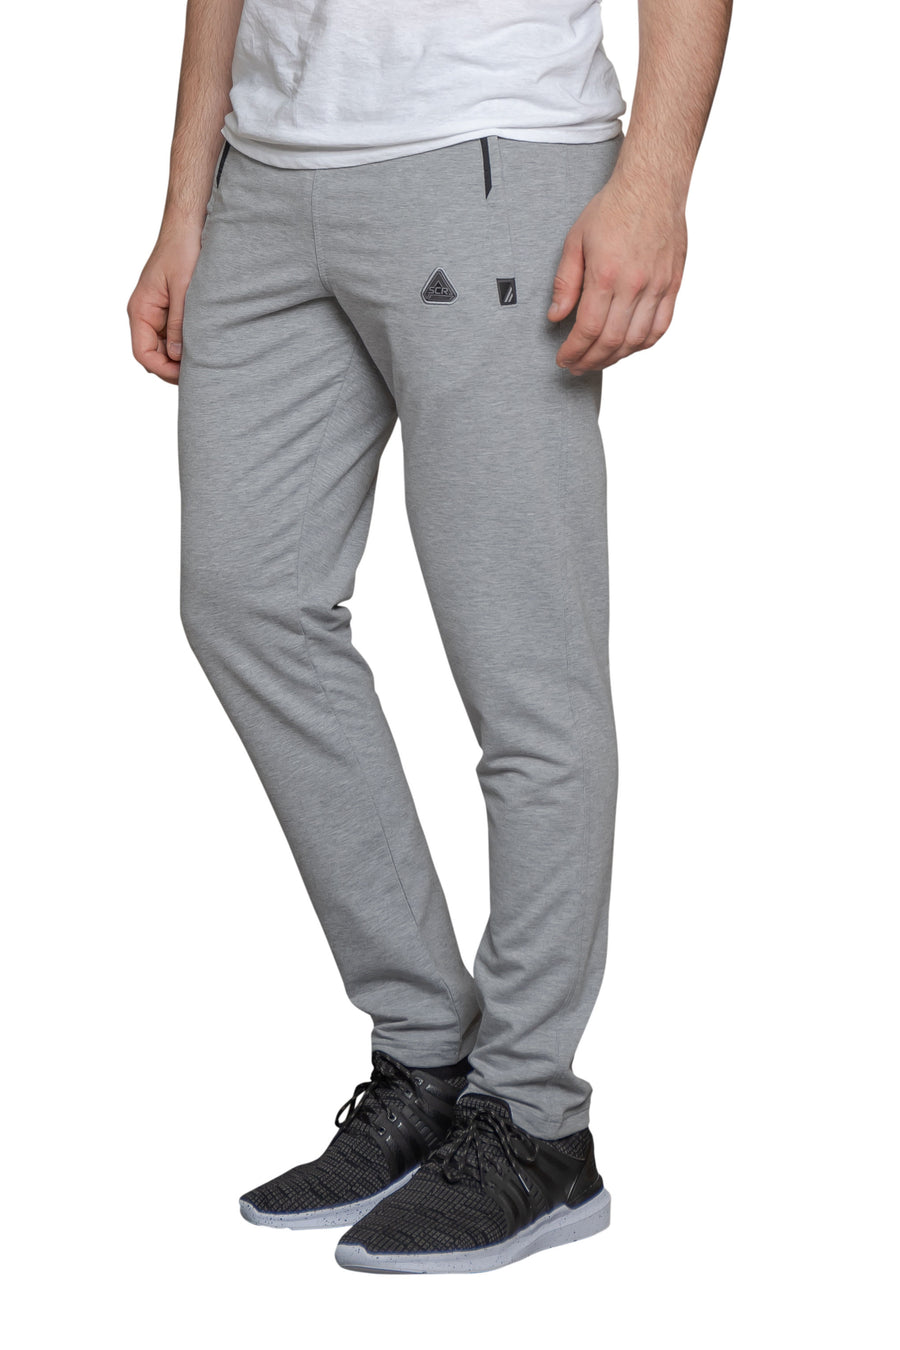 SCR sportswear mens sweatpants-Tapered [536,SLIM TALL, 6'2"-6'11"]